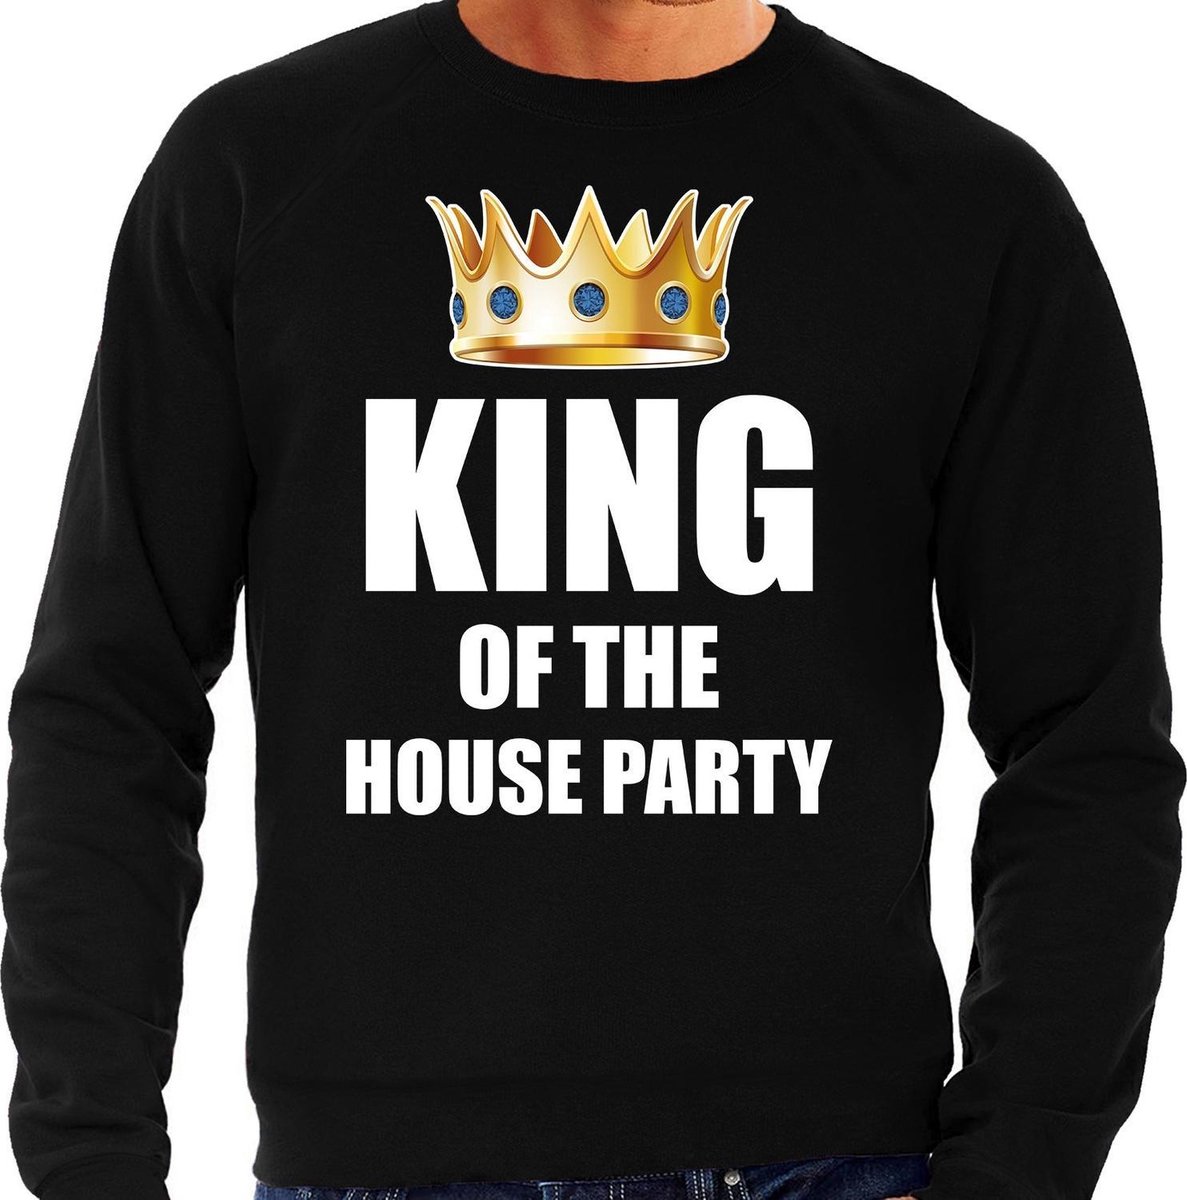 Afbeelding van product Bellatio Decorations  King of the house party sweater / trui zwart voor heren - Woningsdag / Koningsdag - thuisblijvers / lui dagje / relax outfit L  - maat L